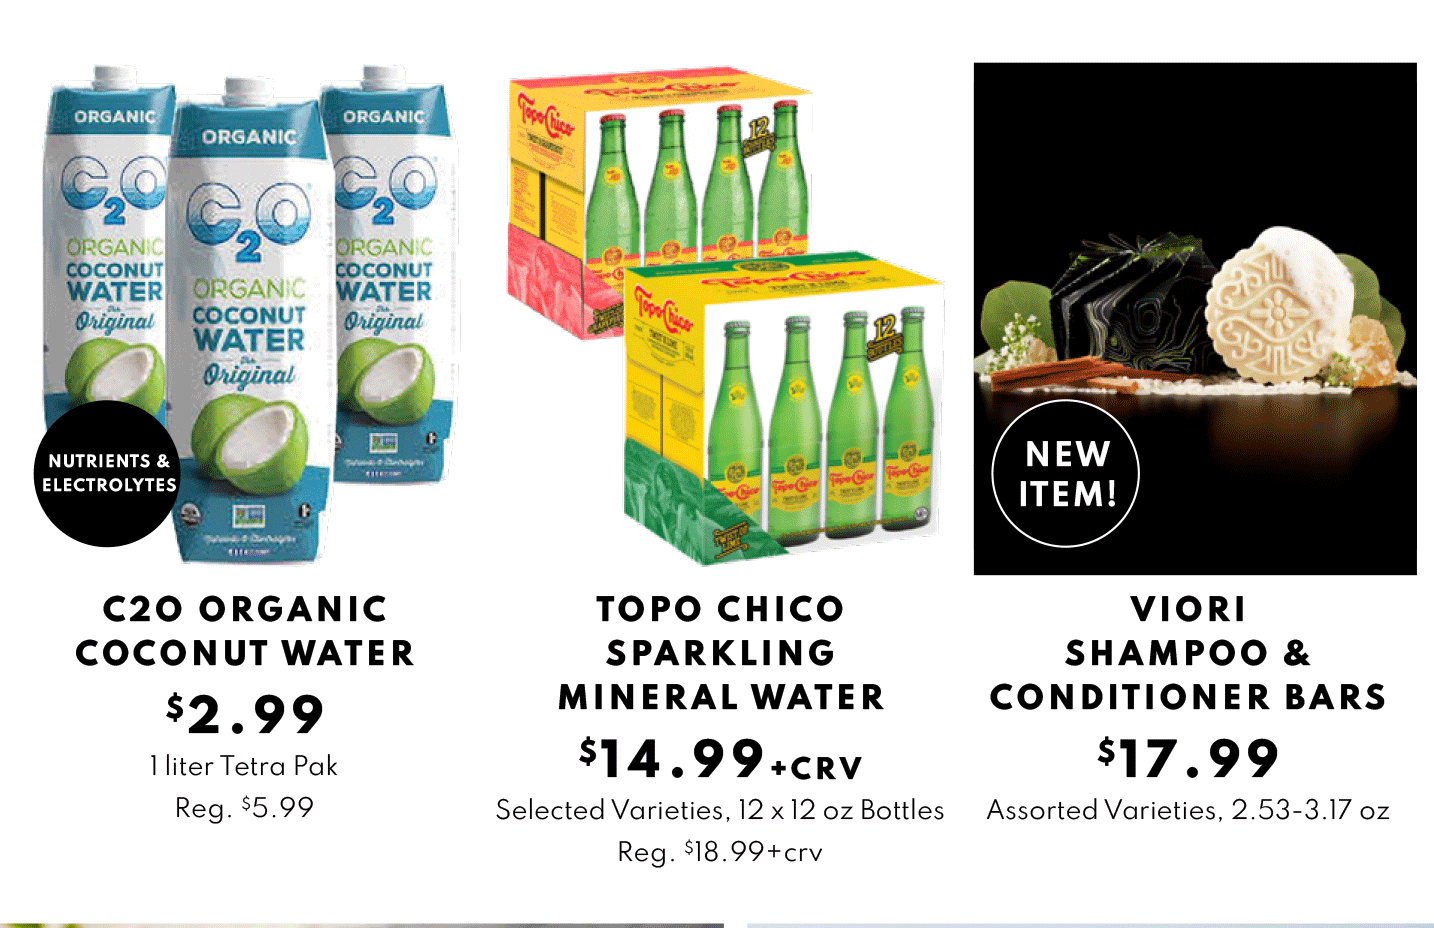 C2O ORGANIC COCONUT WATER $2.99, TOPO CHICO SPARKLING and IORI 
SHAMPOO & CONDITIONER BARS $17.99
MINERAL WATER $14.99